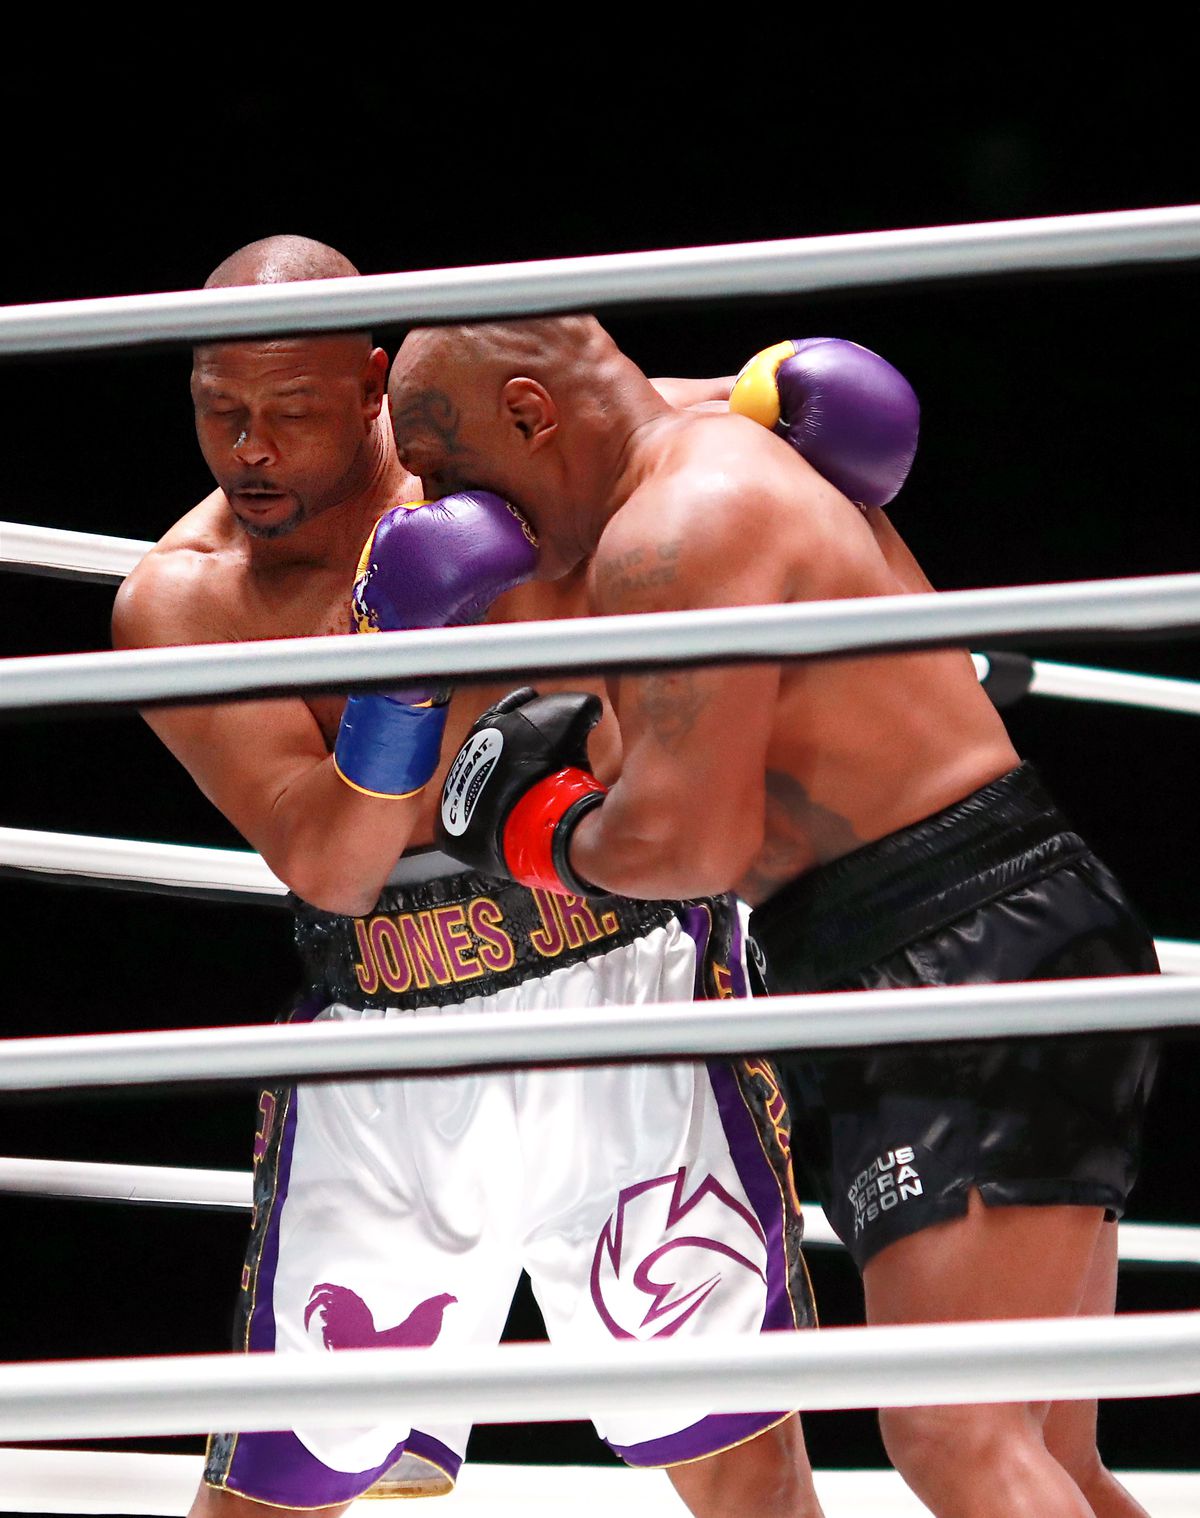 O nouă luptă între Mike Tyson și Roy Jones Jr.? „Trebuie să o mai facem o dată!”